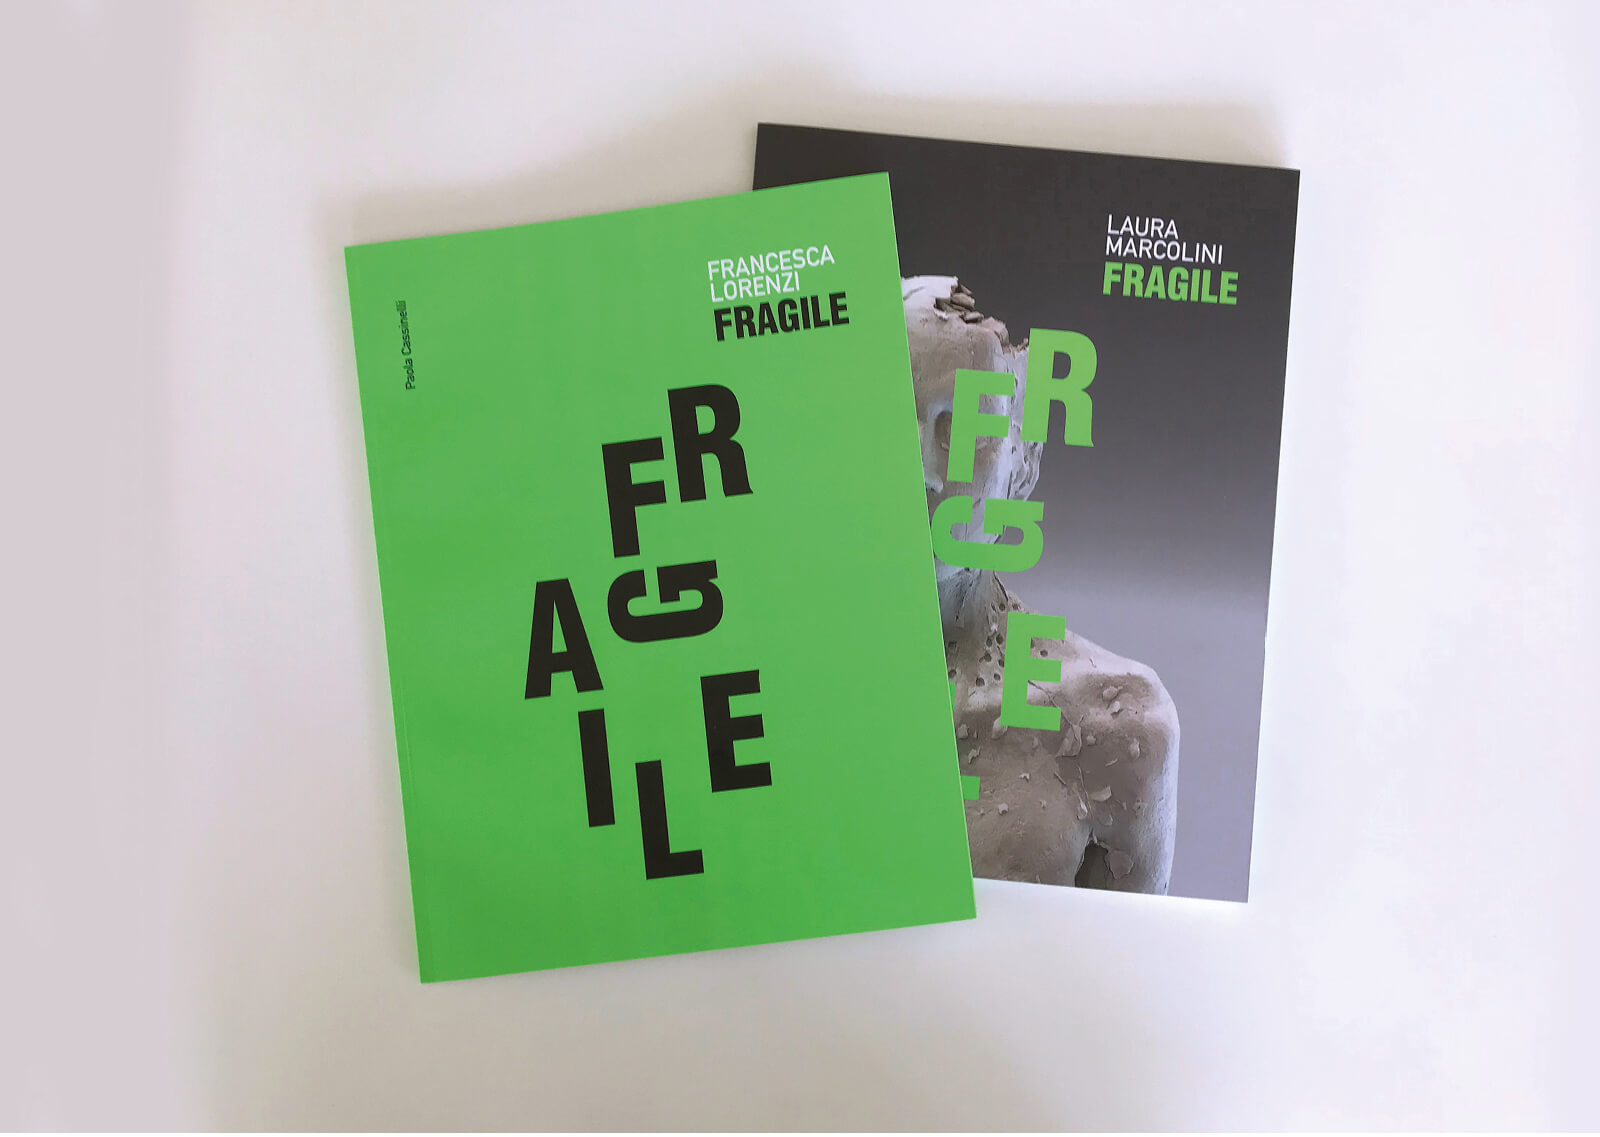 Copertine dei cataloghi di arte creati per la mostra Fragile del 2021, realizzati in colore verde fluorescente su fondi fotografici. Progetto Diadestudio, Arco-Trento